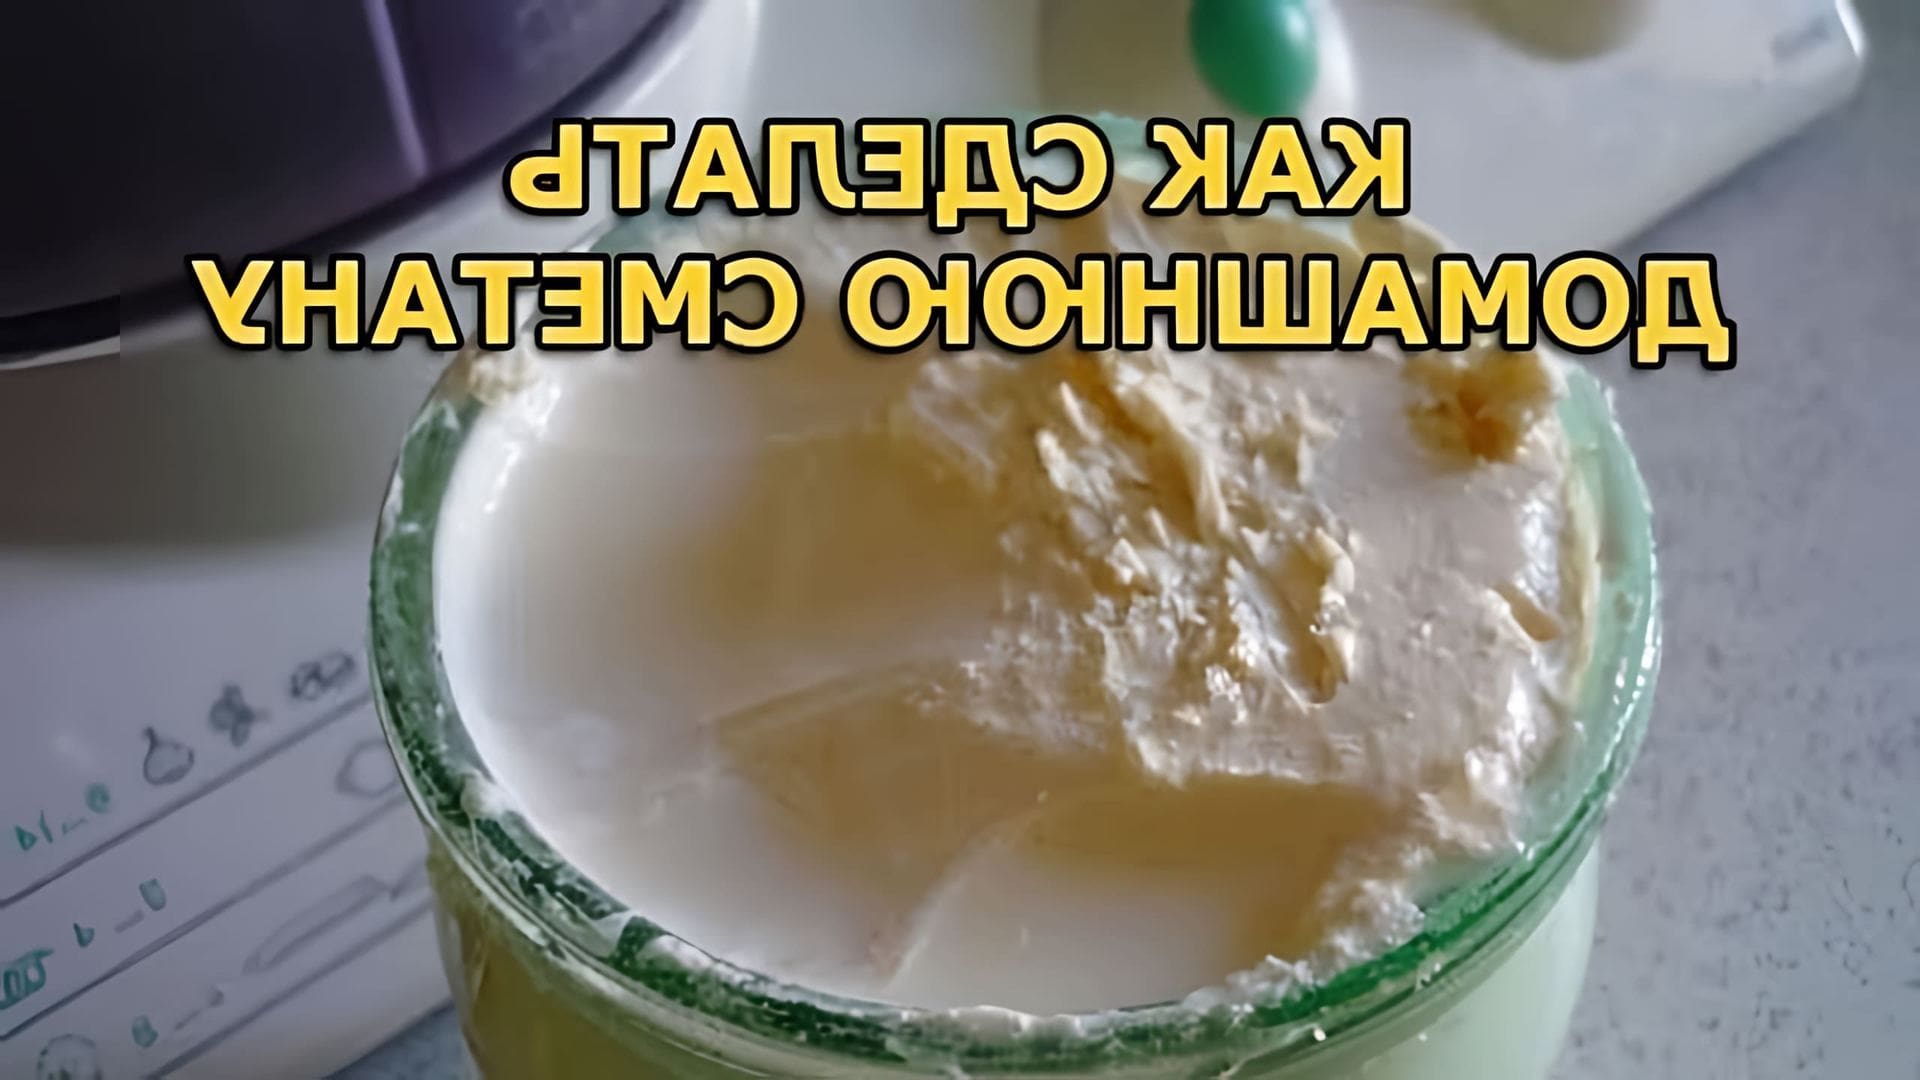 В этом видео показано, как приготовить сметану из деревенского молока